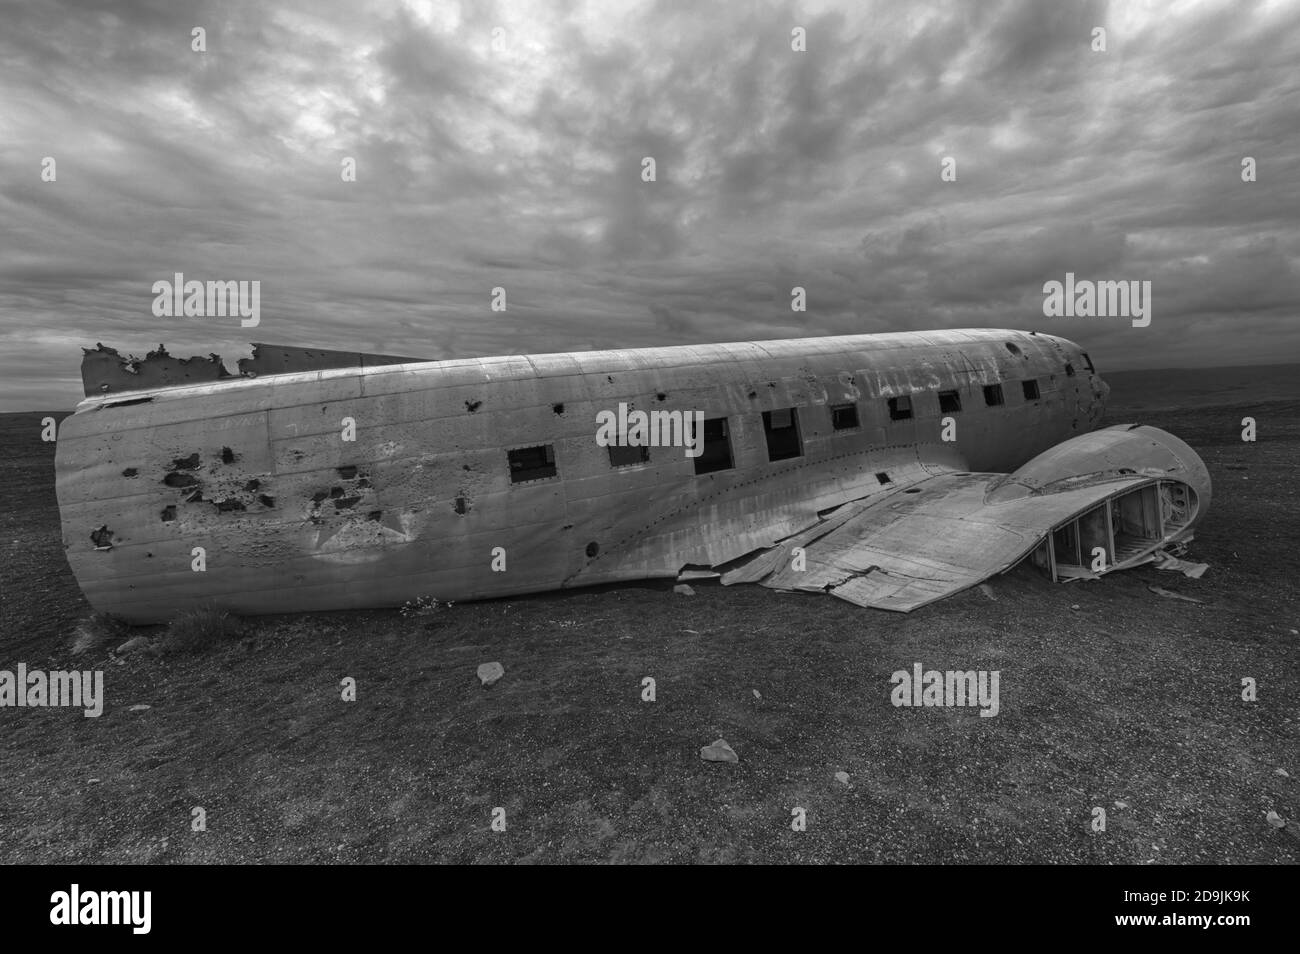 L’épave d’un avion militaire américain s’est écrasée au milieu de nulle part. L'avion était à court de carburant et s'est écrasé dans un désert non loin de Vik, au sud de l'Islande Banque D'Images